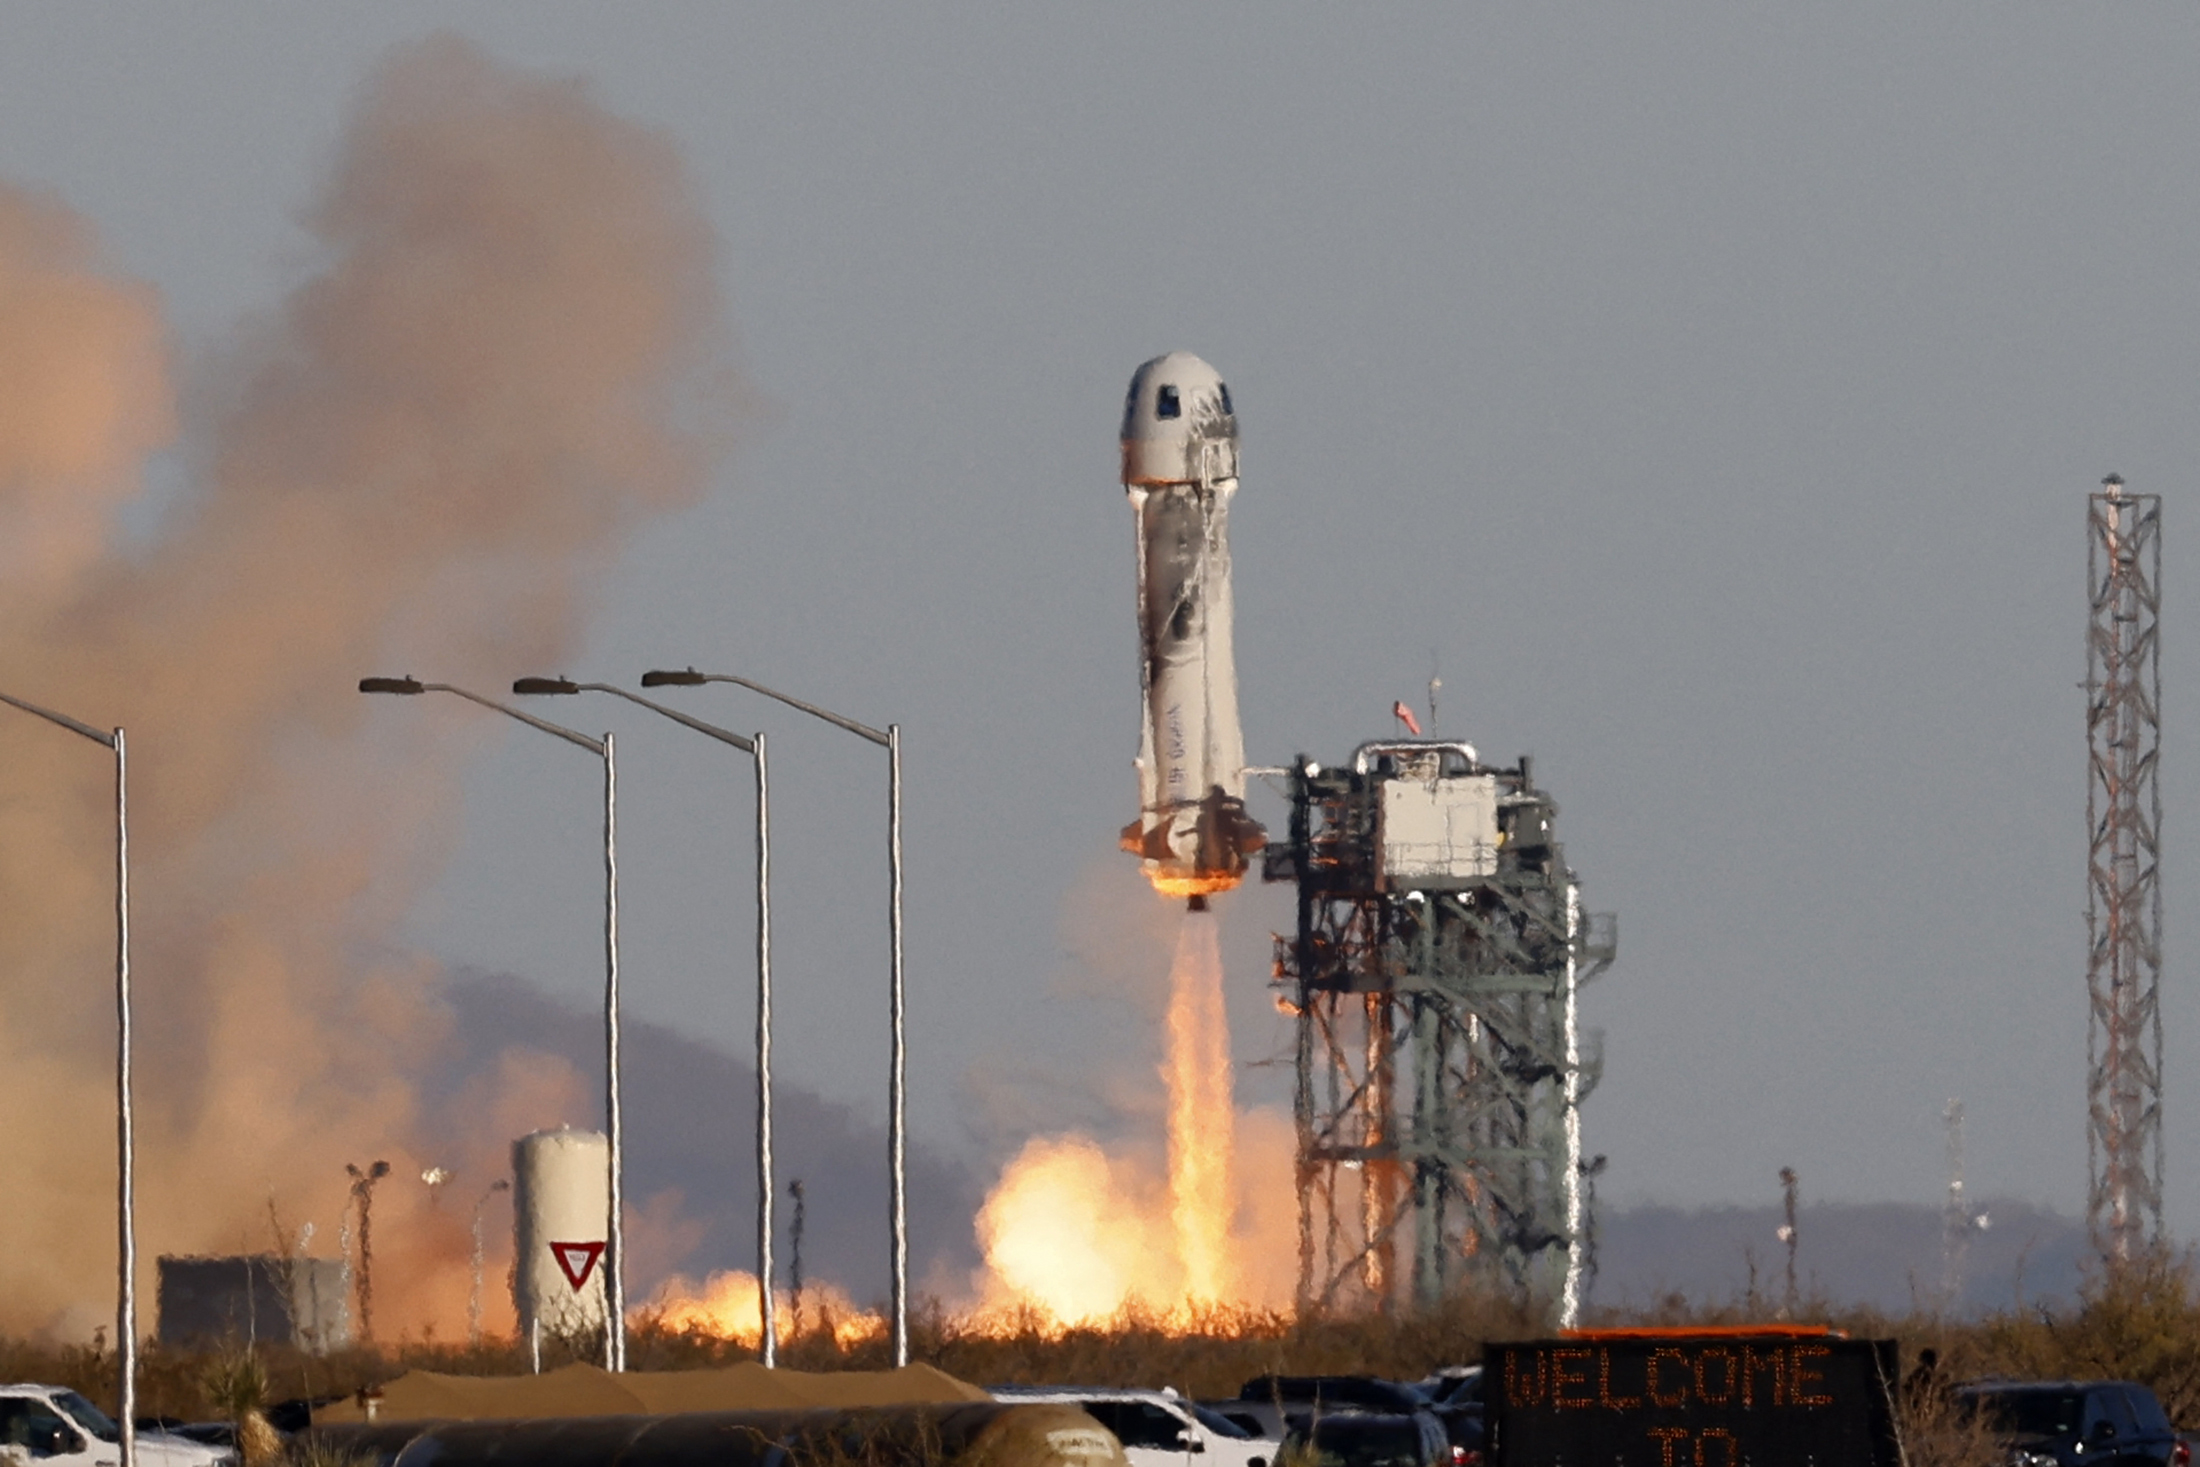 El cohete New Shepard de Blue Origen despegó varias veces en forma exitosa en 2021. Un buen presagio de lo que podrá ser el próximo cohete de la compañía espacial de Jeff Bezos llamado New Glenn. (REUTERS/Joe Skipper)